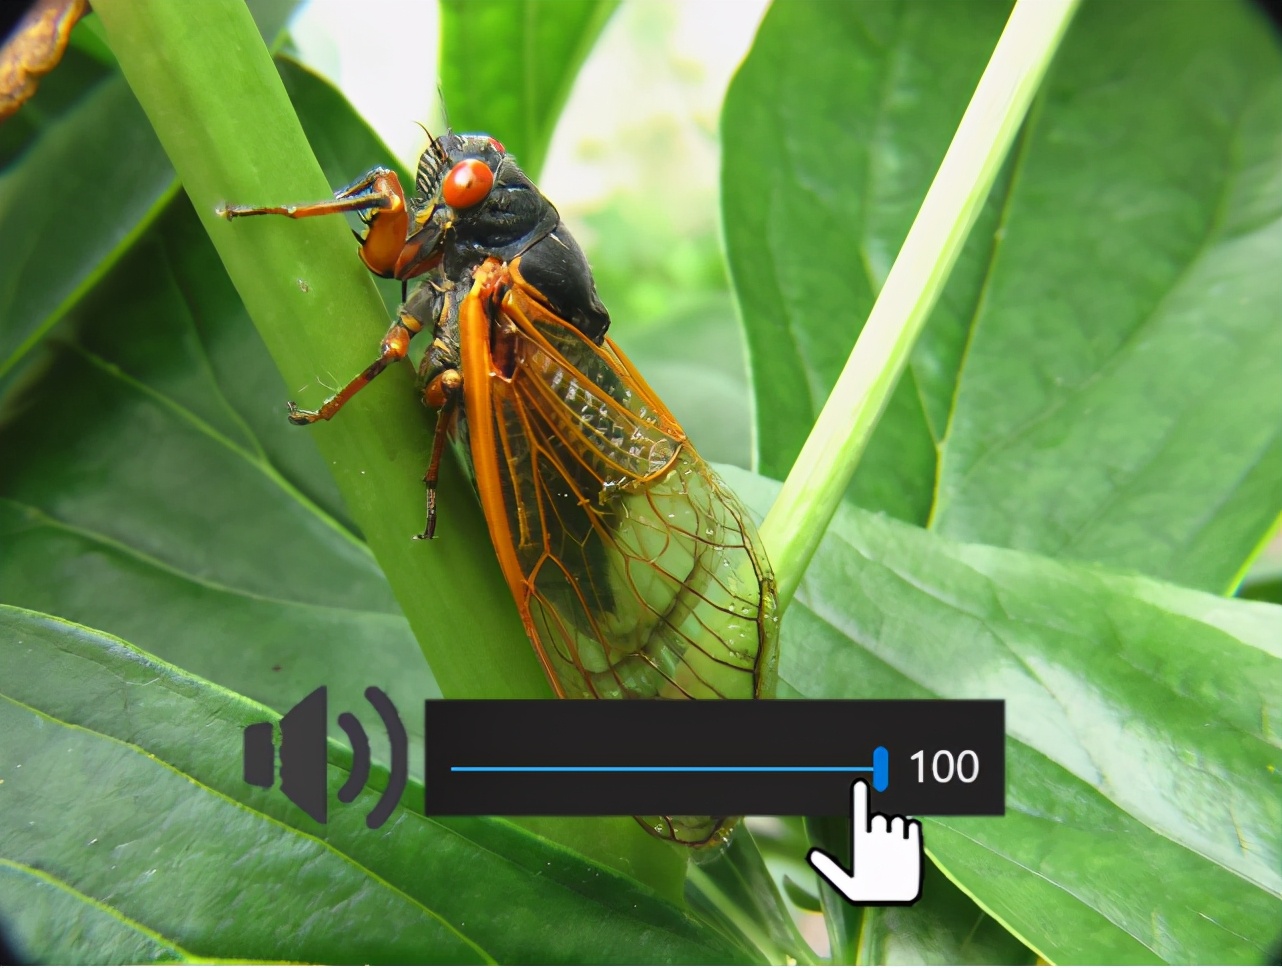 蝉是世界上叫声最响亮的昆虫之一,雄性蝉的腹部有独特的发声器官(鼓室